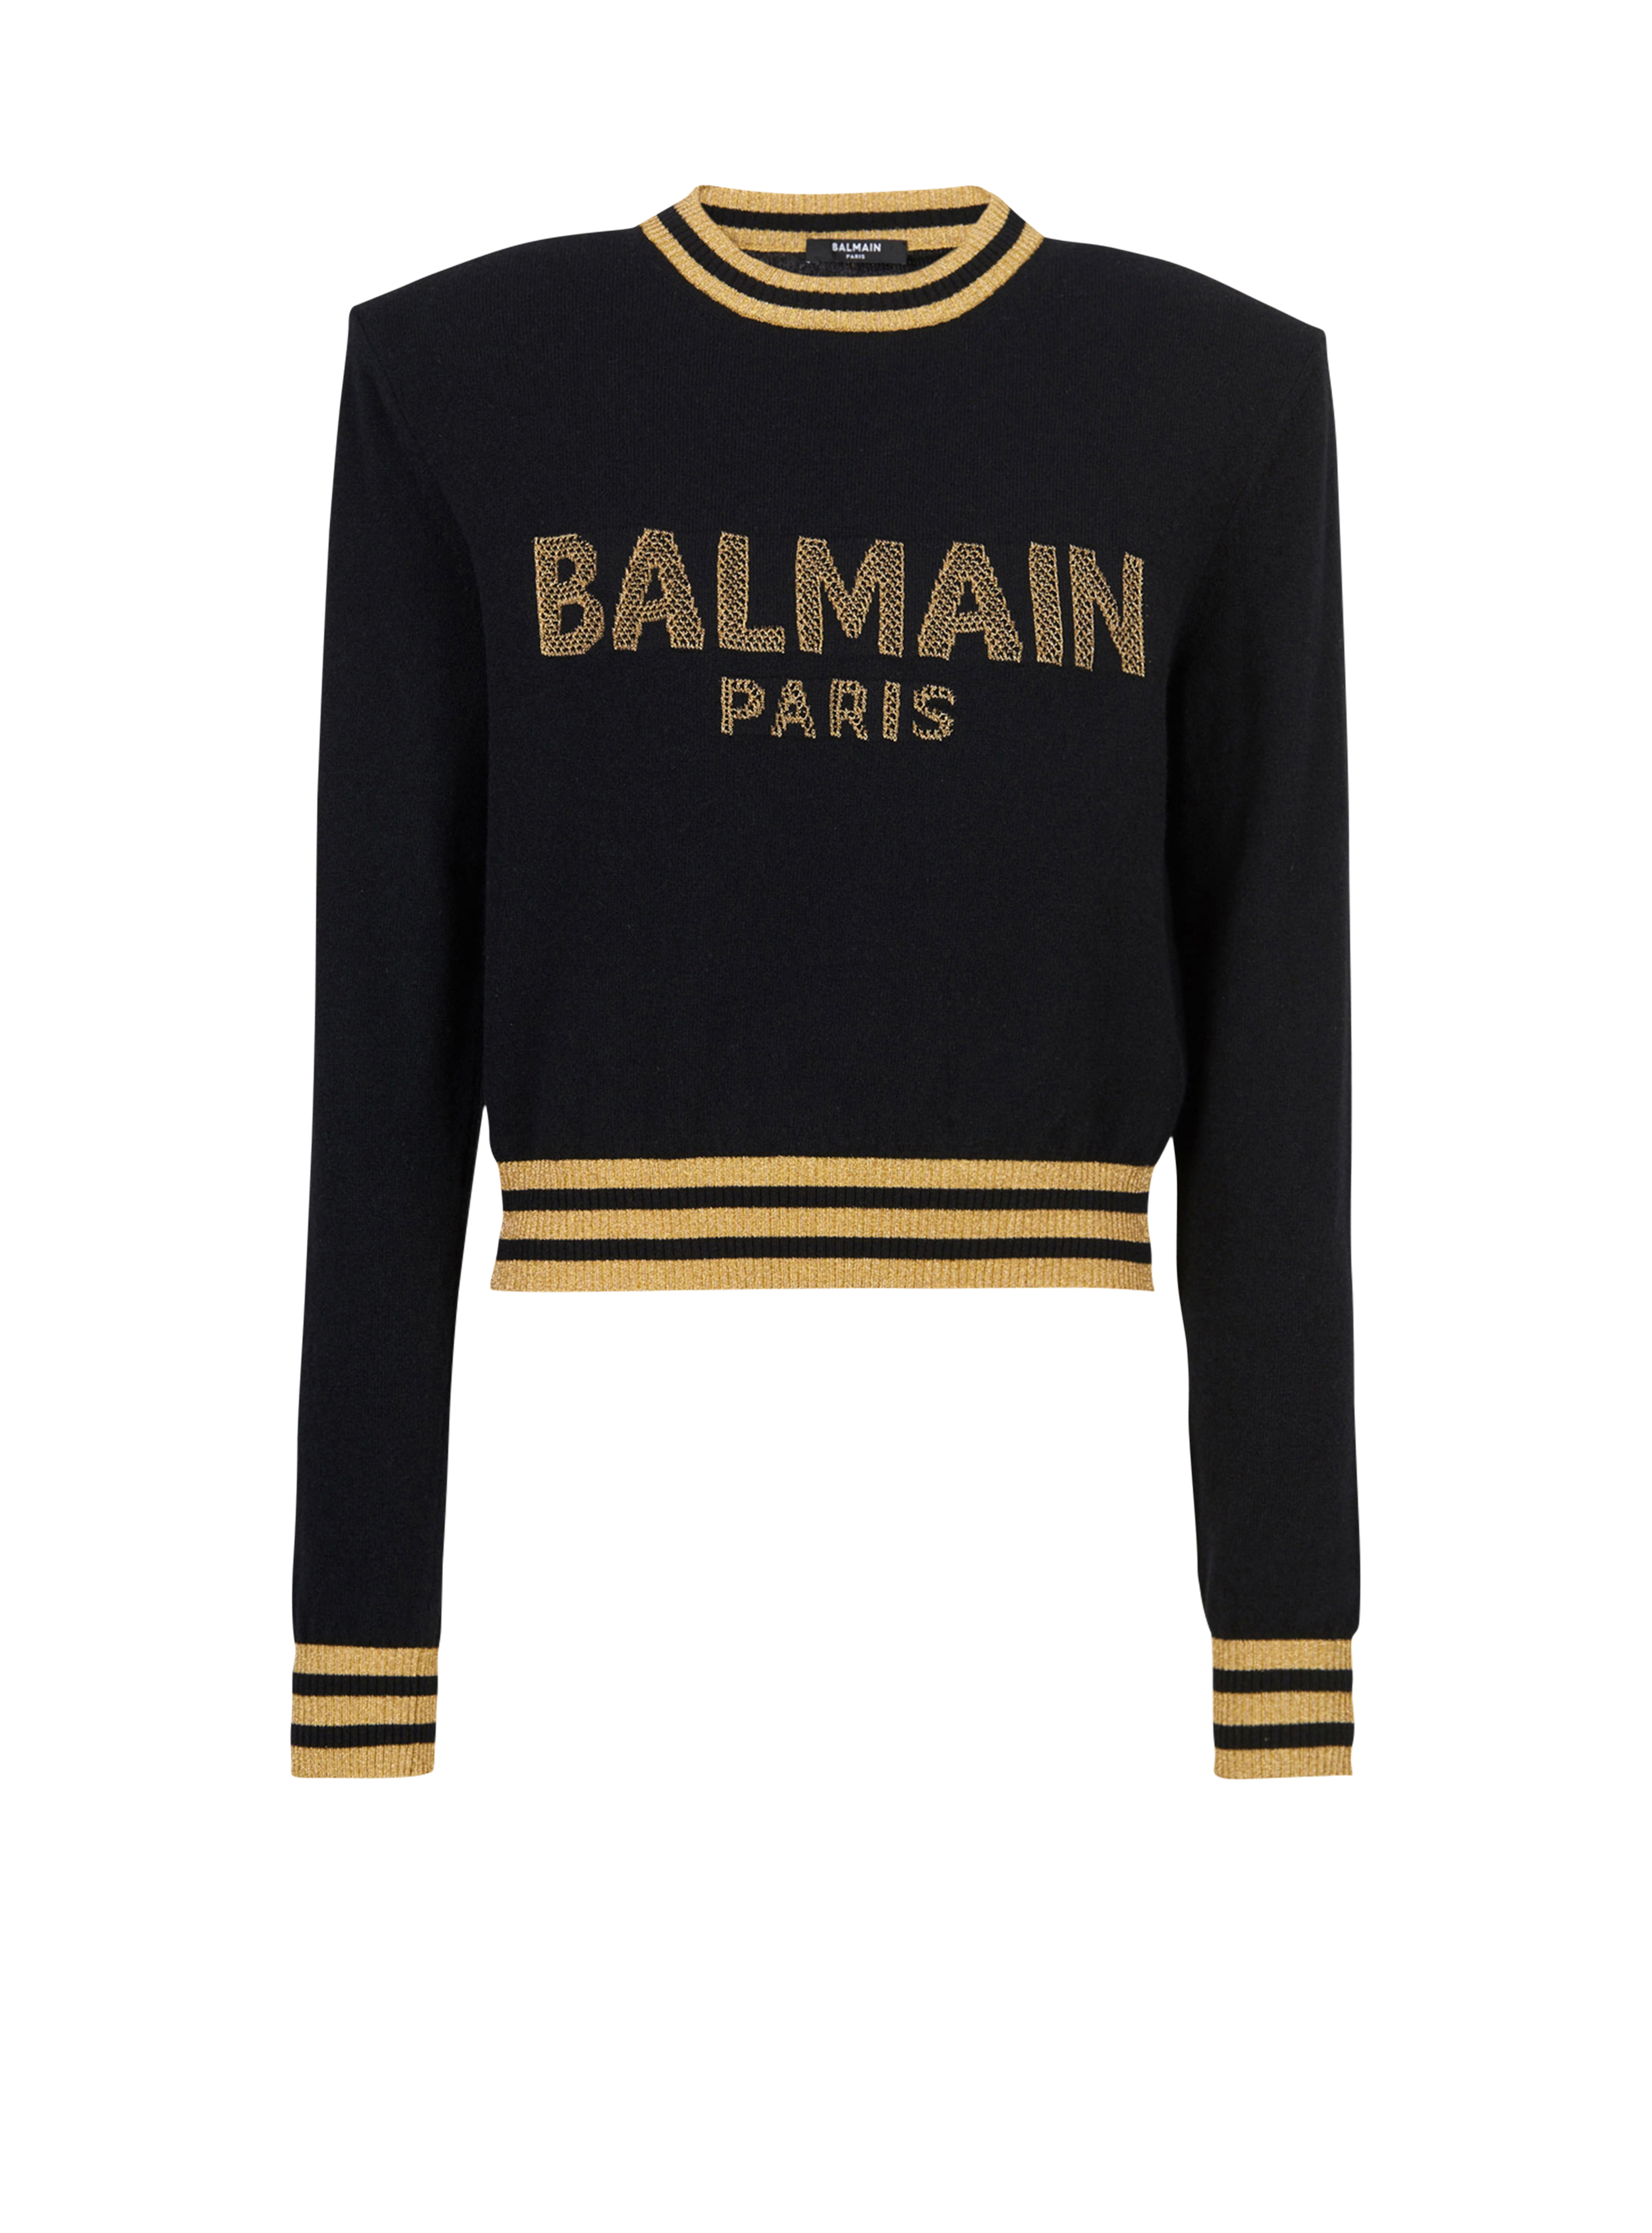 Cropped-Sweatshirt aus Wolle mit goldfarbenem Balmain Logo, schwarz